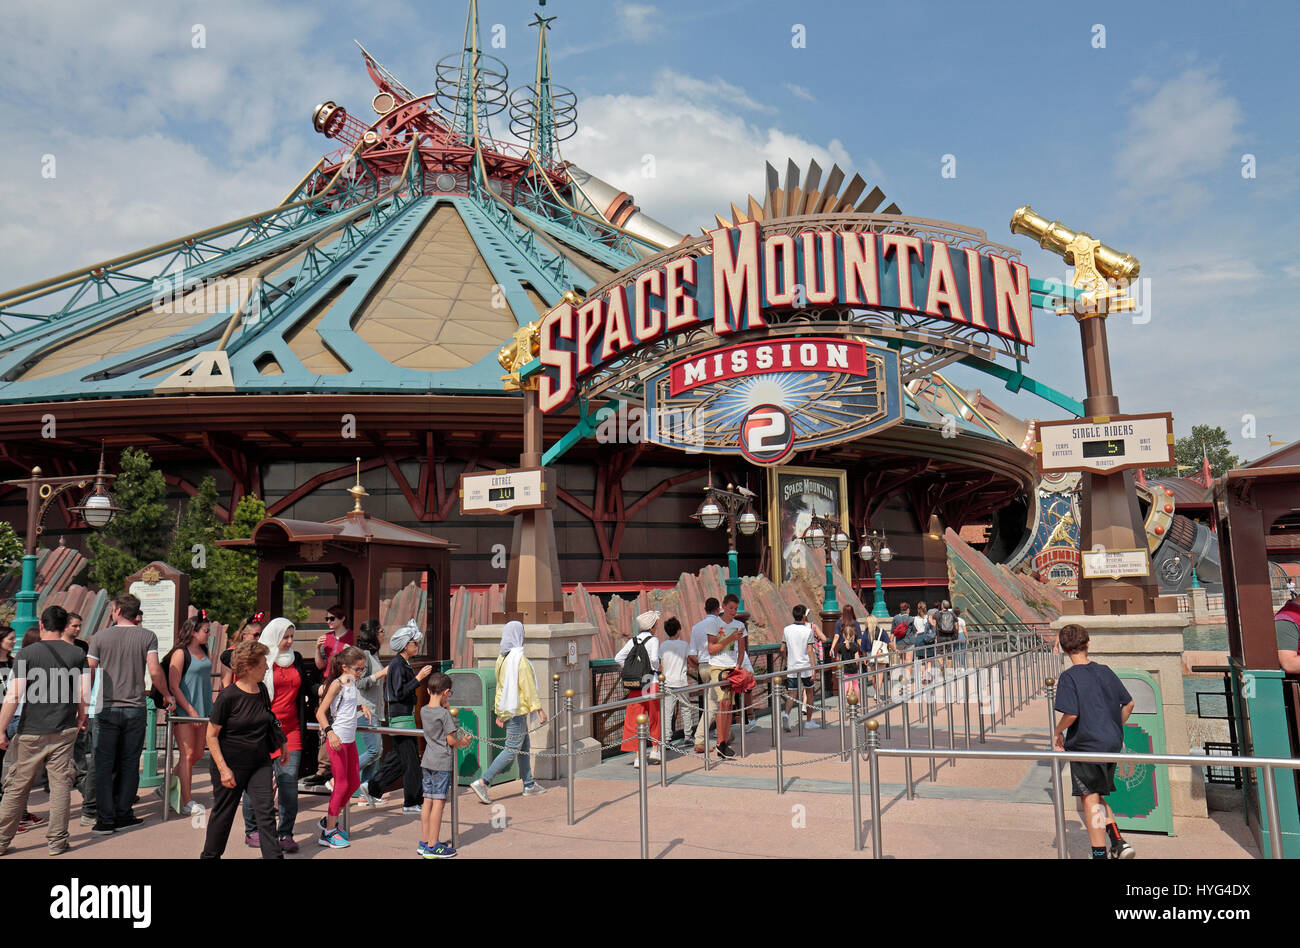 Der Space Mountain Mission 2 fahren in Disneyland Paris, Marne-la-Vallée, in der Nähe von Paris, Frankreich. Stockfoto